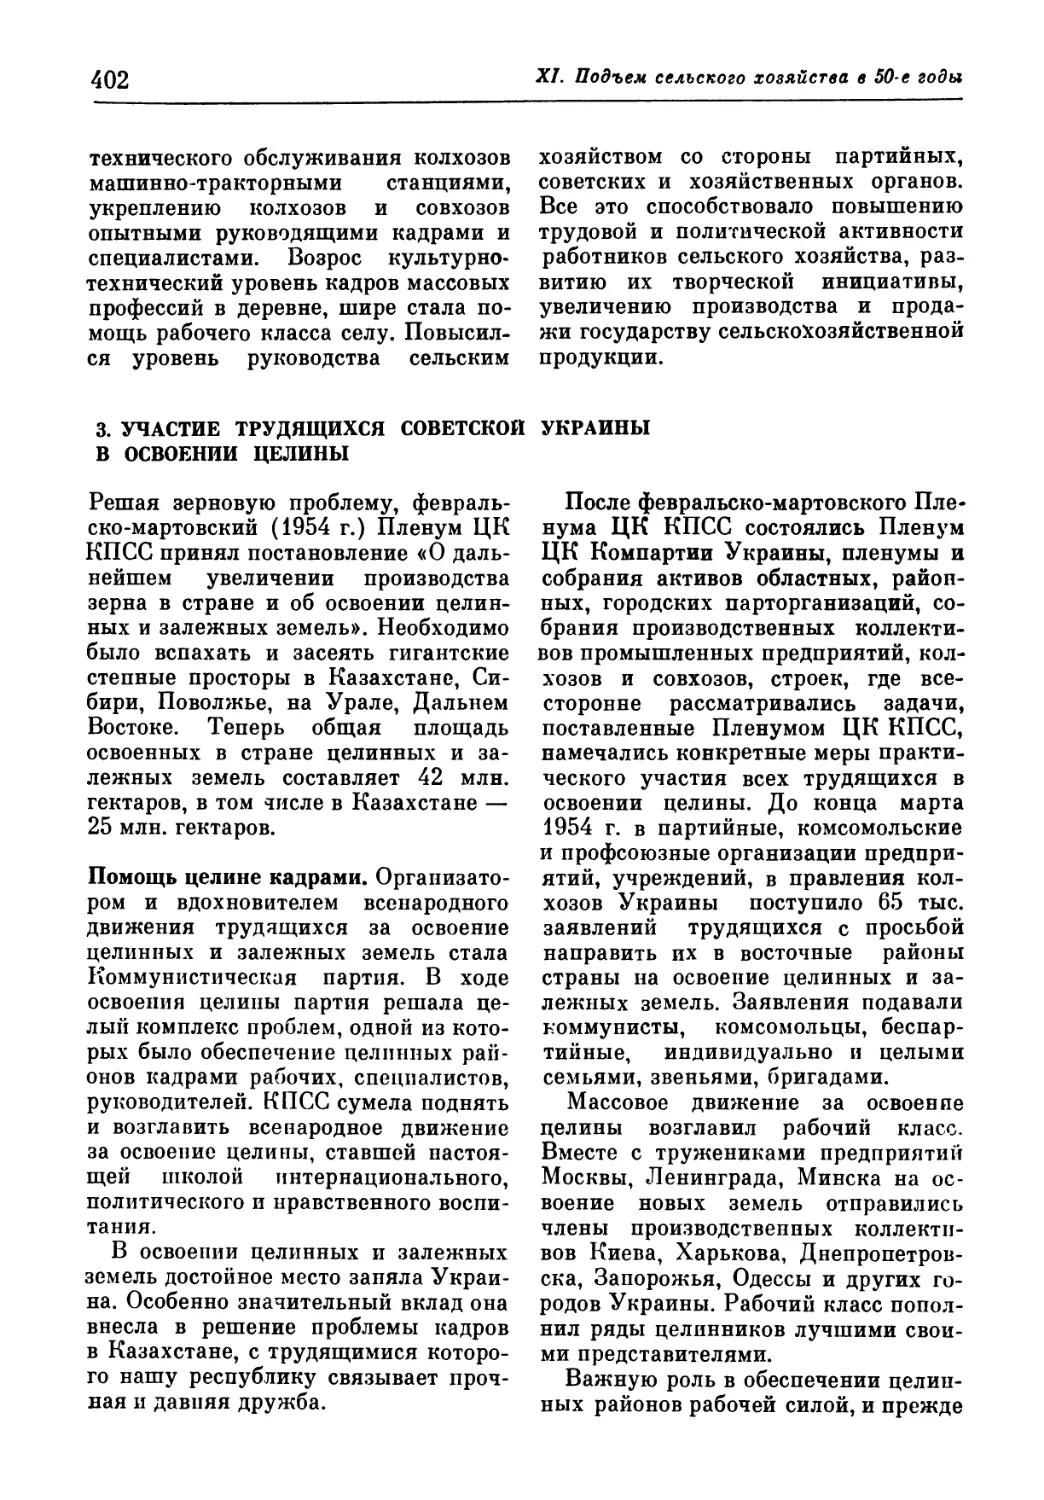 3. Участие трудящихся Советской Украины в освоении целины